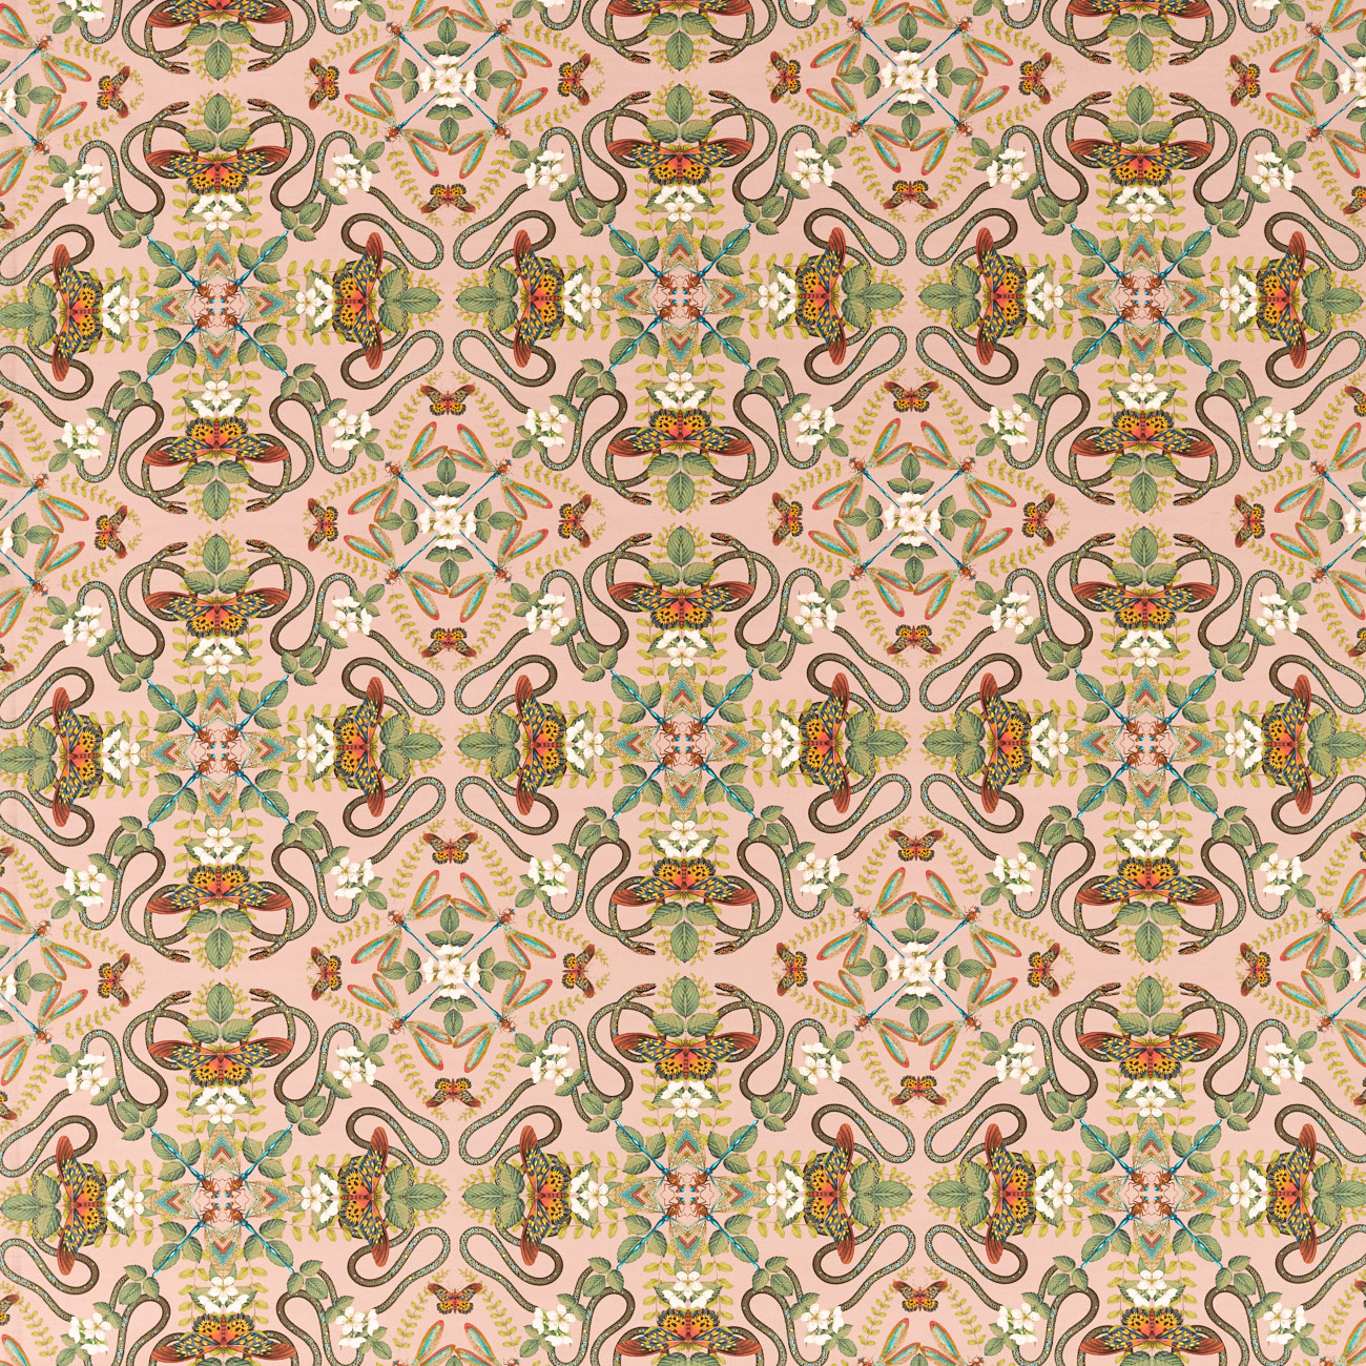 Emerald Forest Fabric by Wedgwood - F1599/01 - Blush